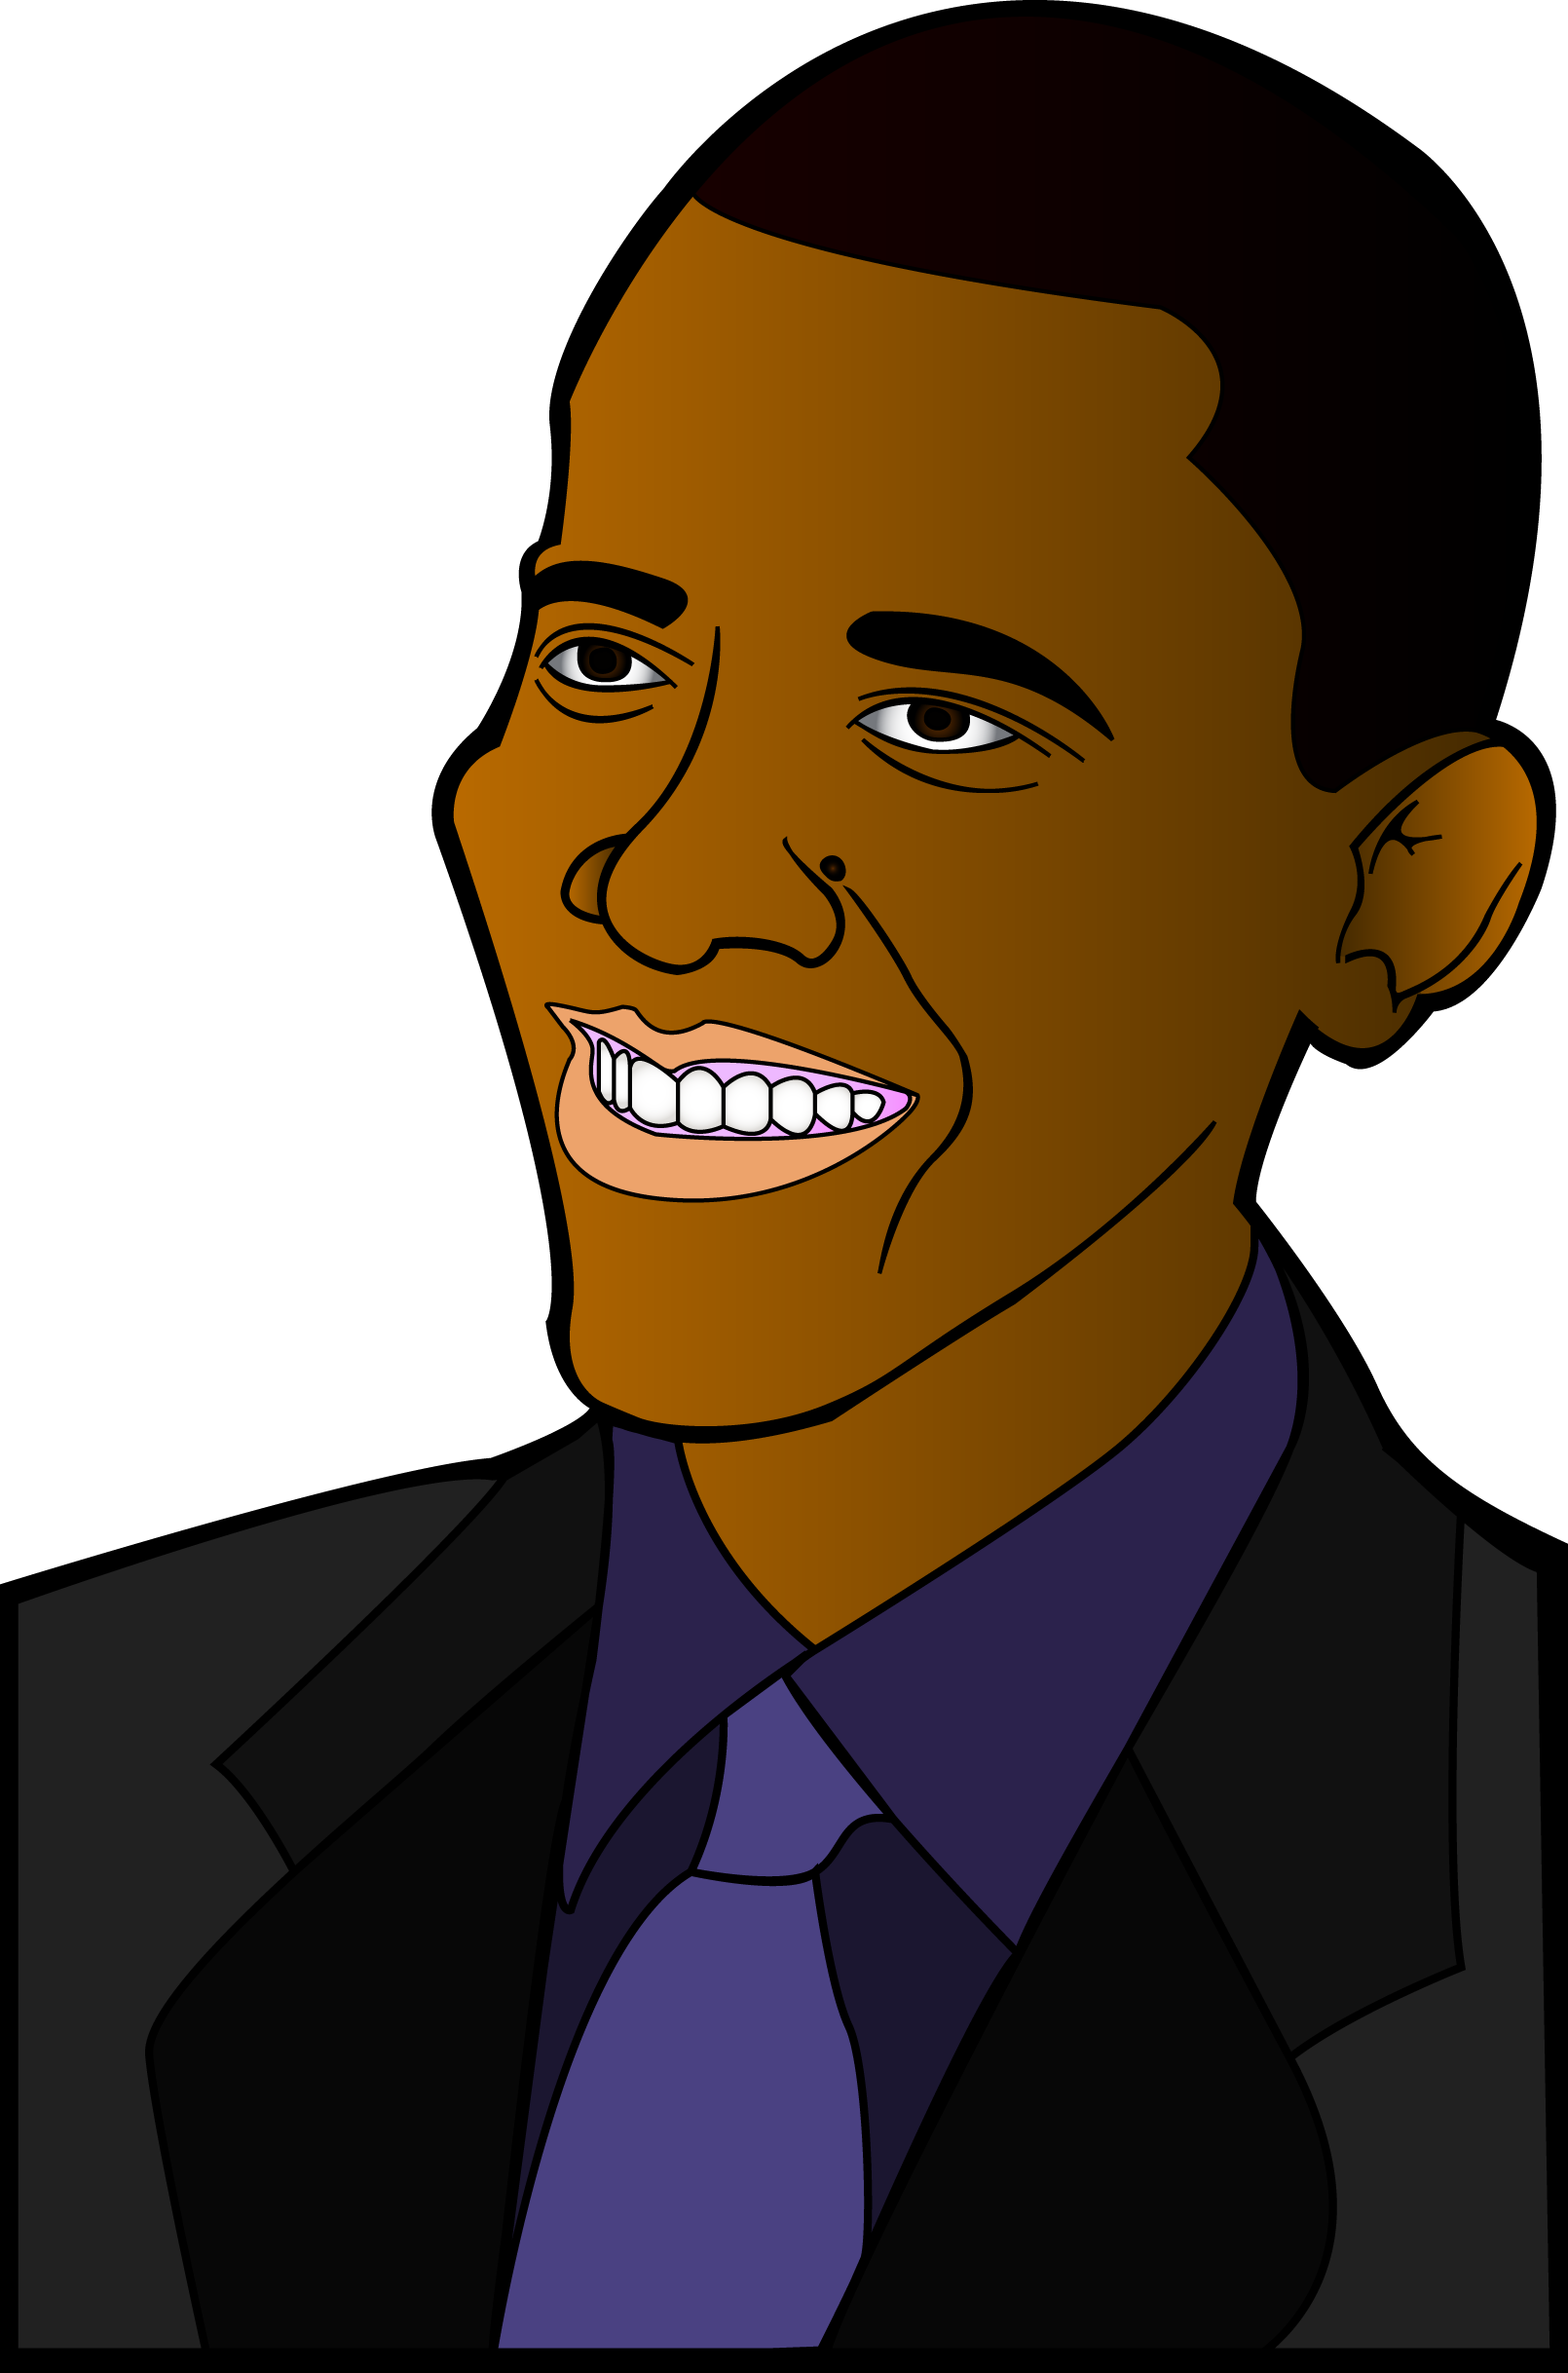 Barack Face Vector Obama Free Download Image PNG Image